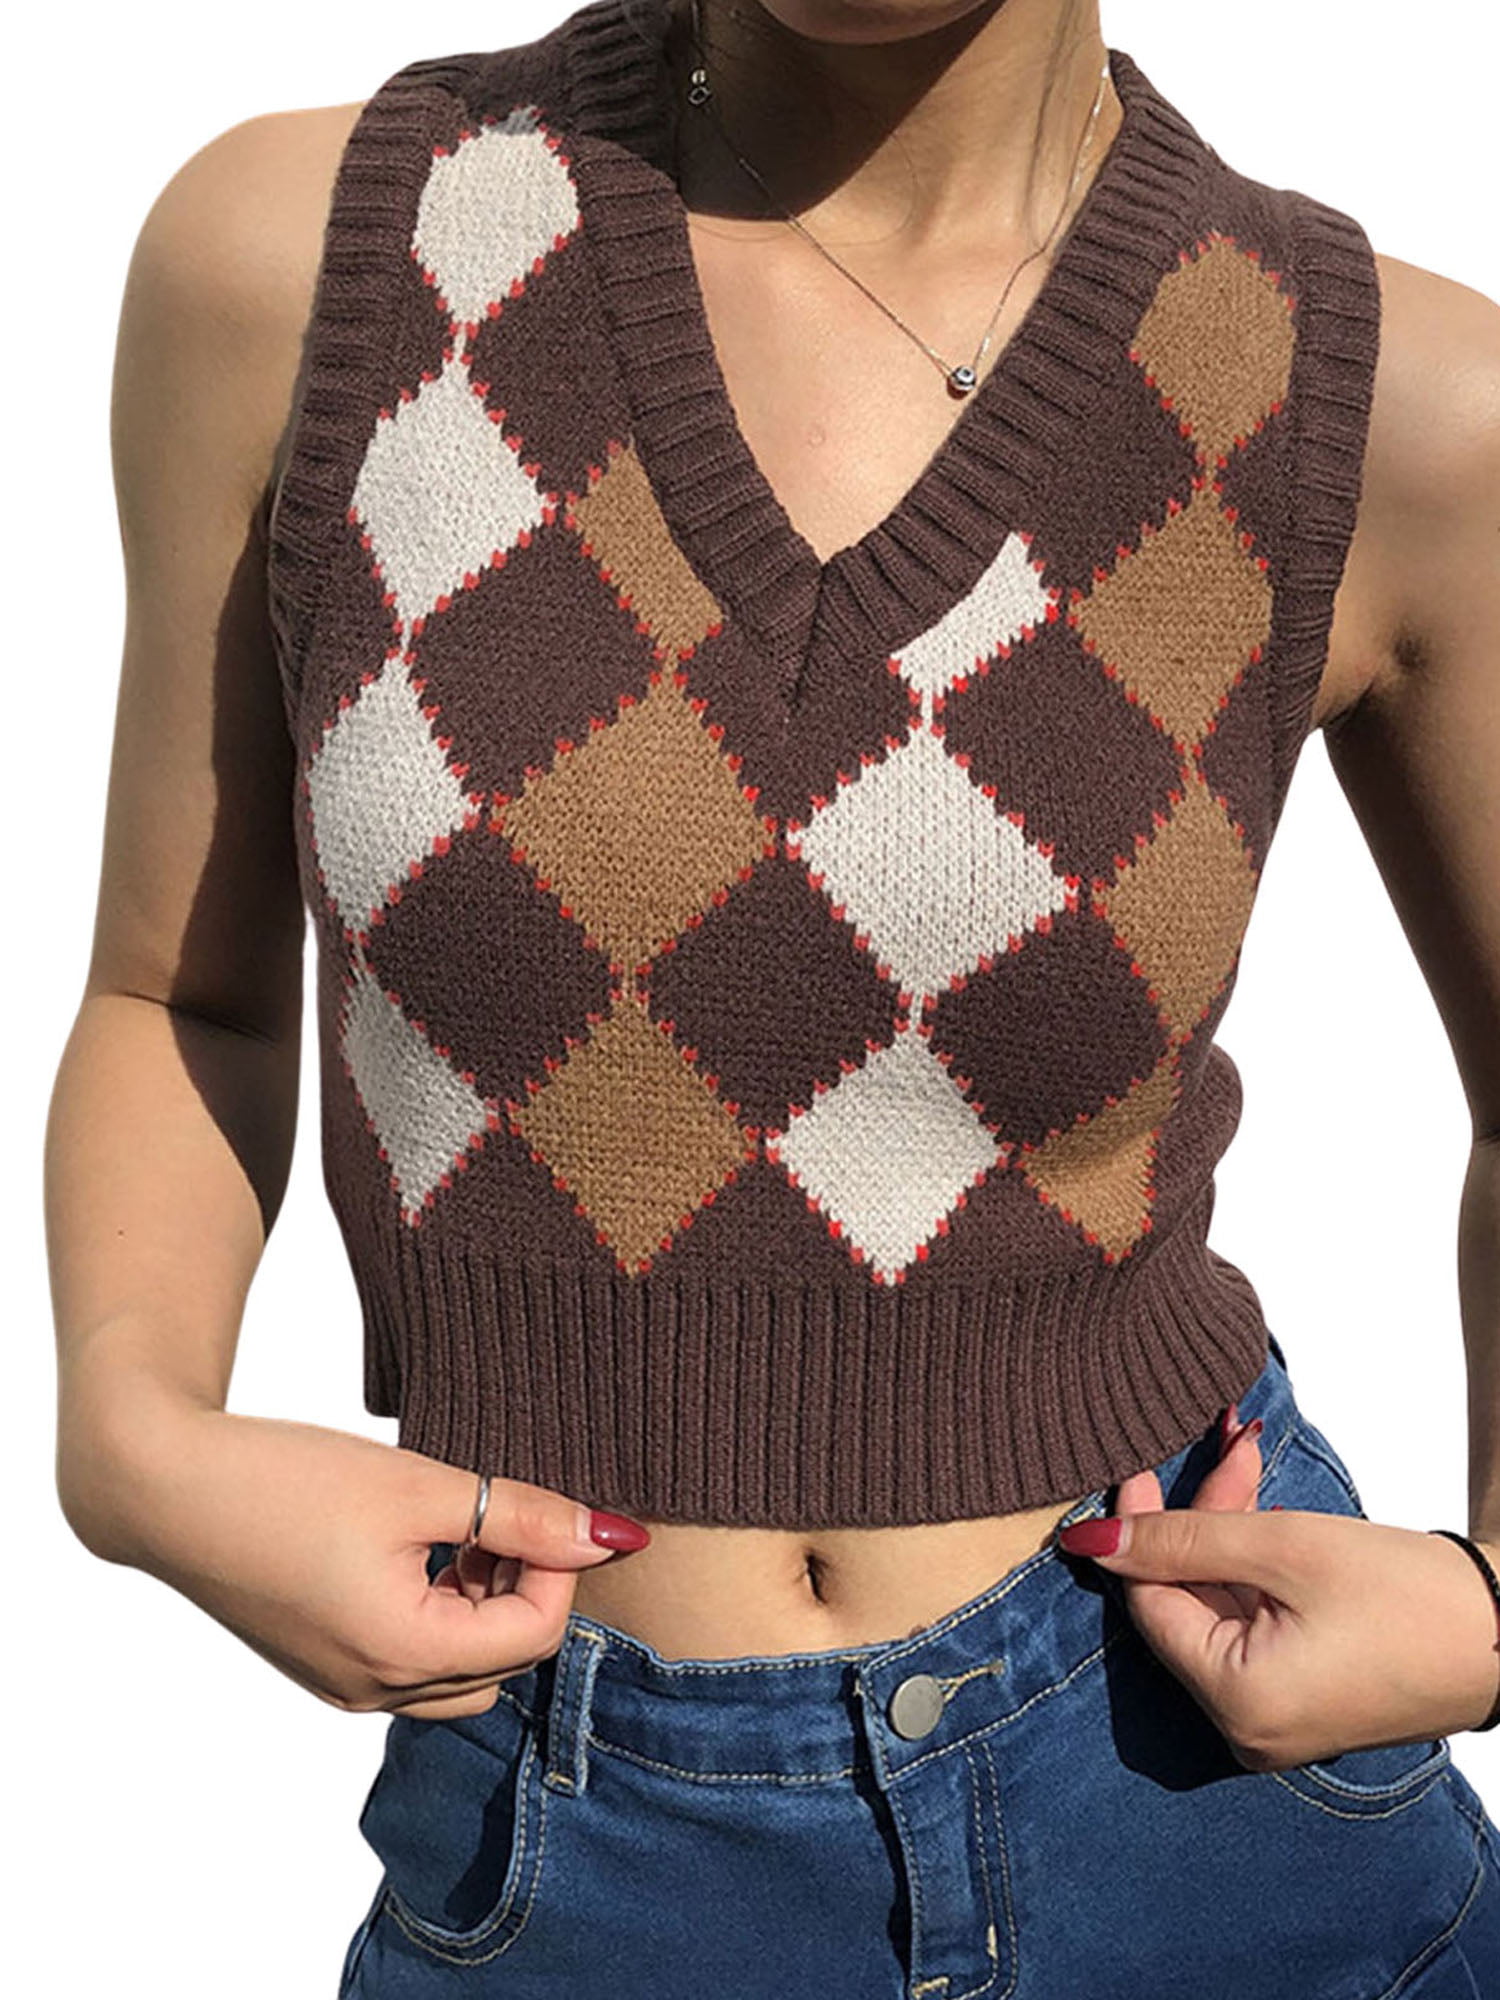 Romwe Women's Floral Crop Sweater Vest Preppy Style V Neck Tank Tops Knitwear 